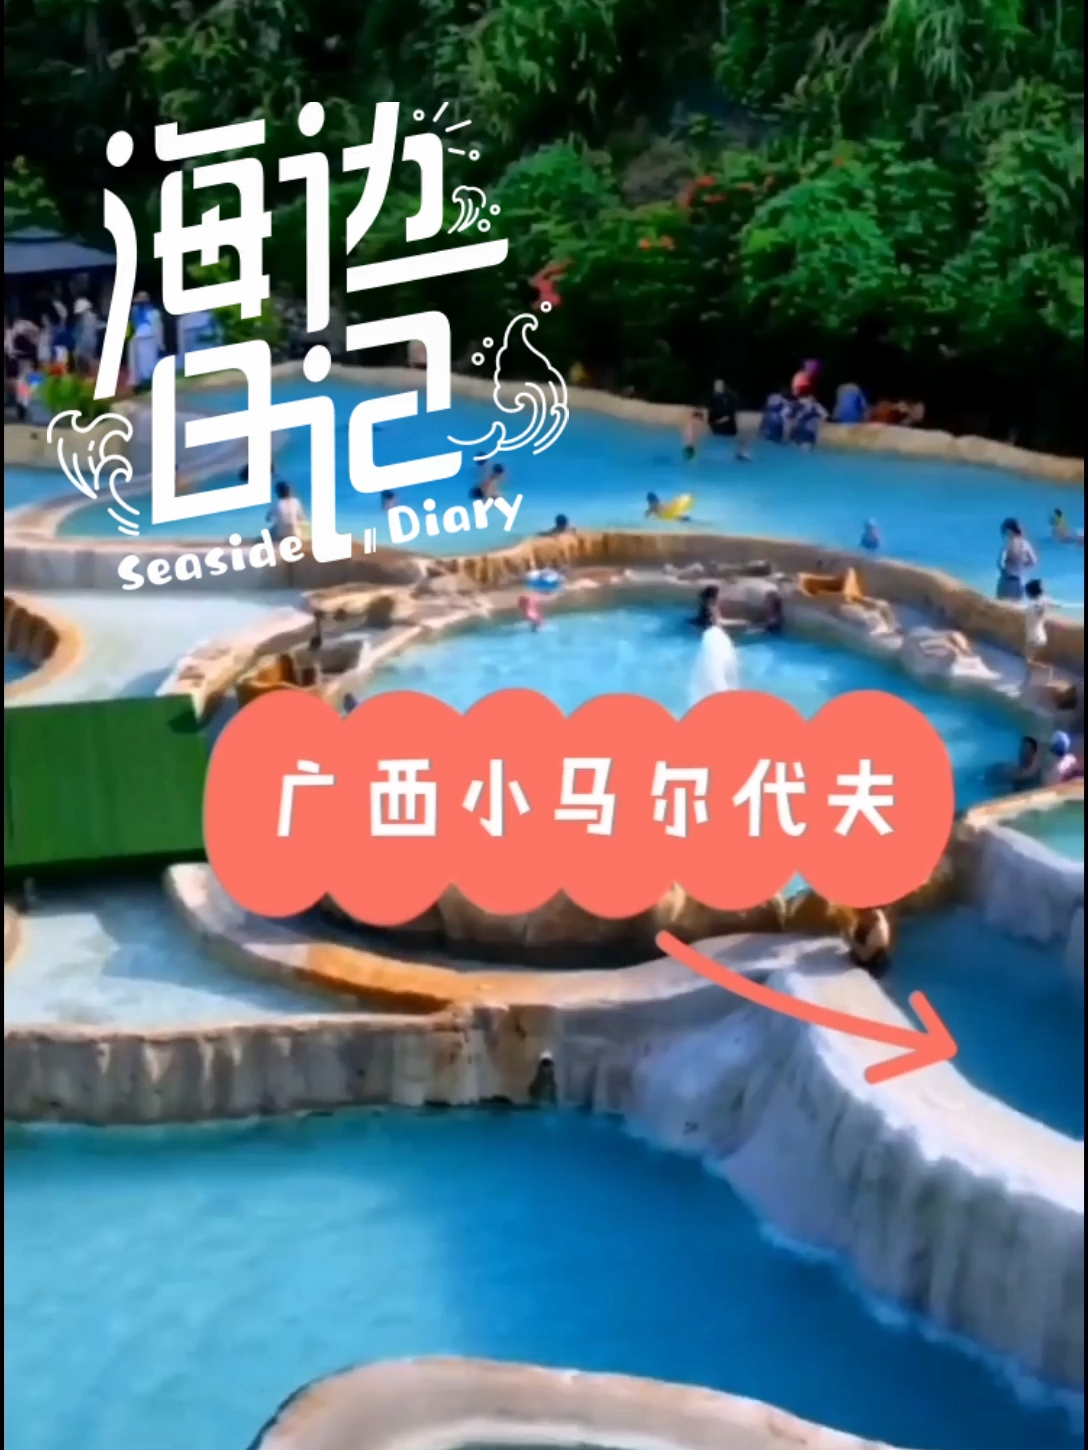 广西版棉花堡，醉人的蓝色温泉#广西旅游 #广西旅游攻略 #广西十万大山 #新时代新青年新旅游